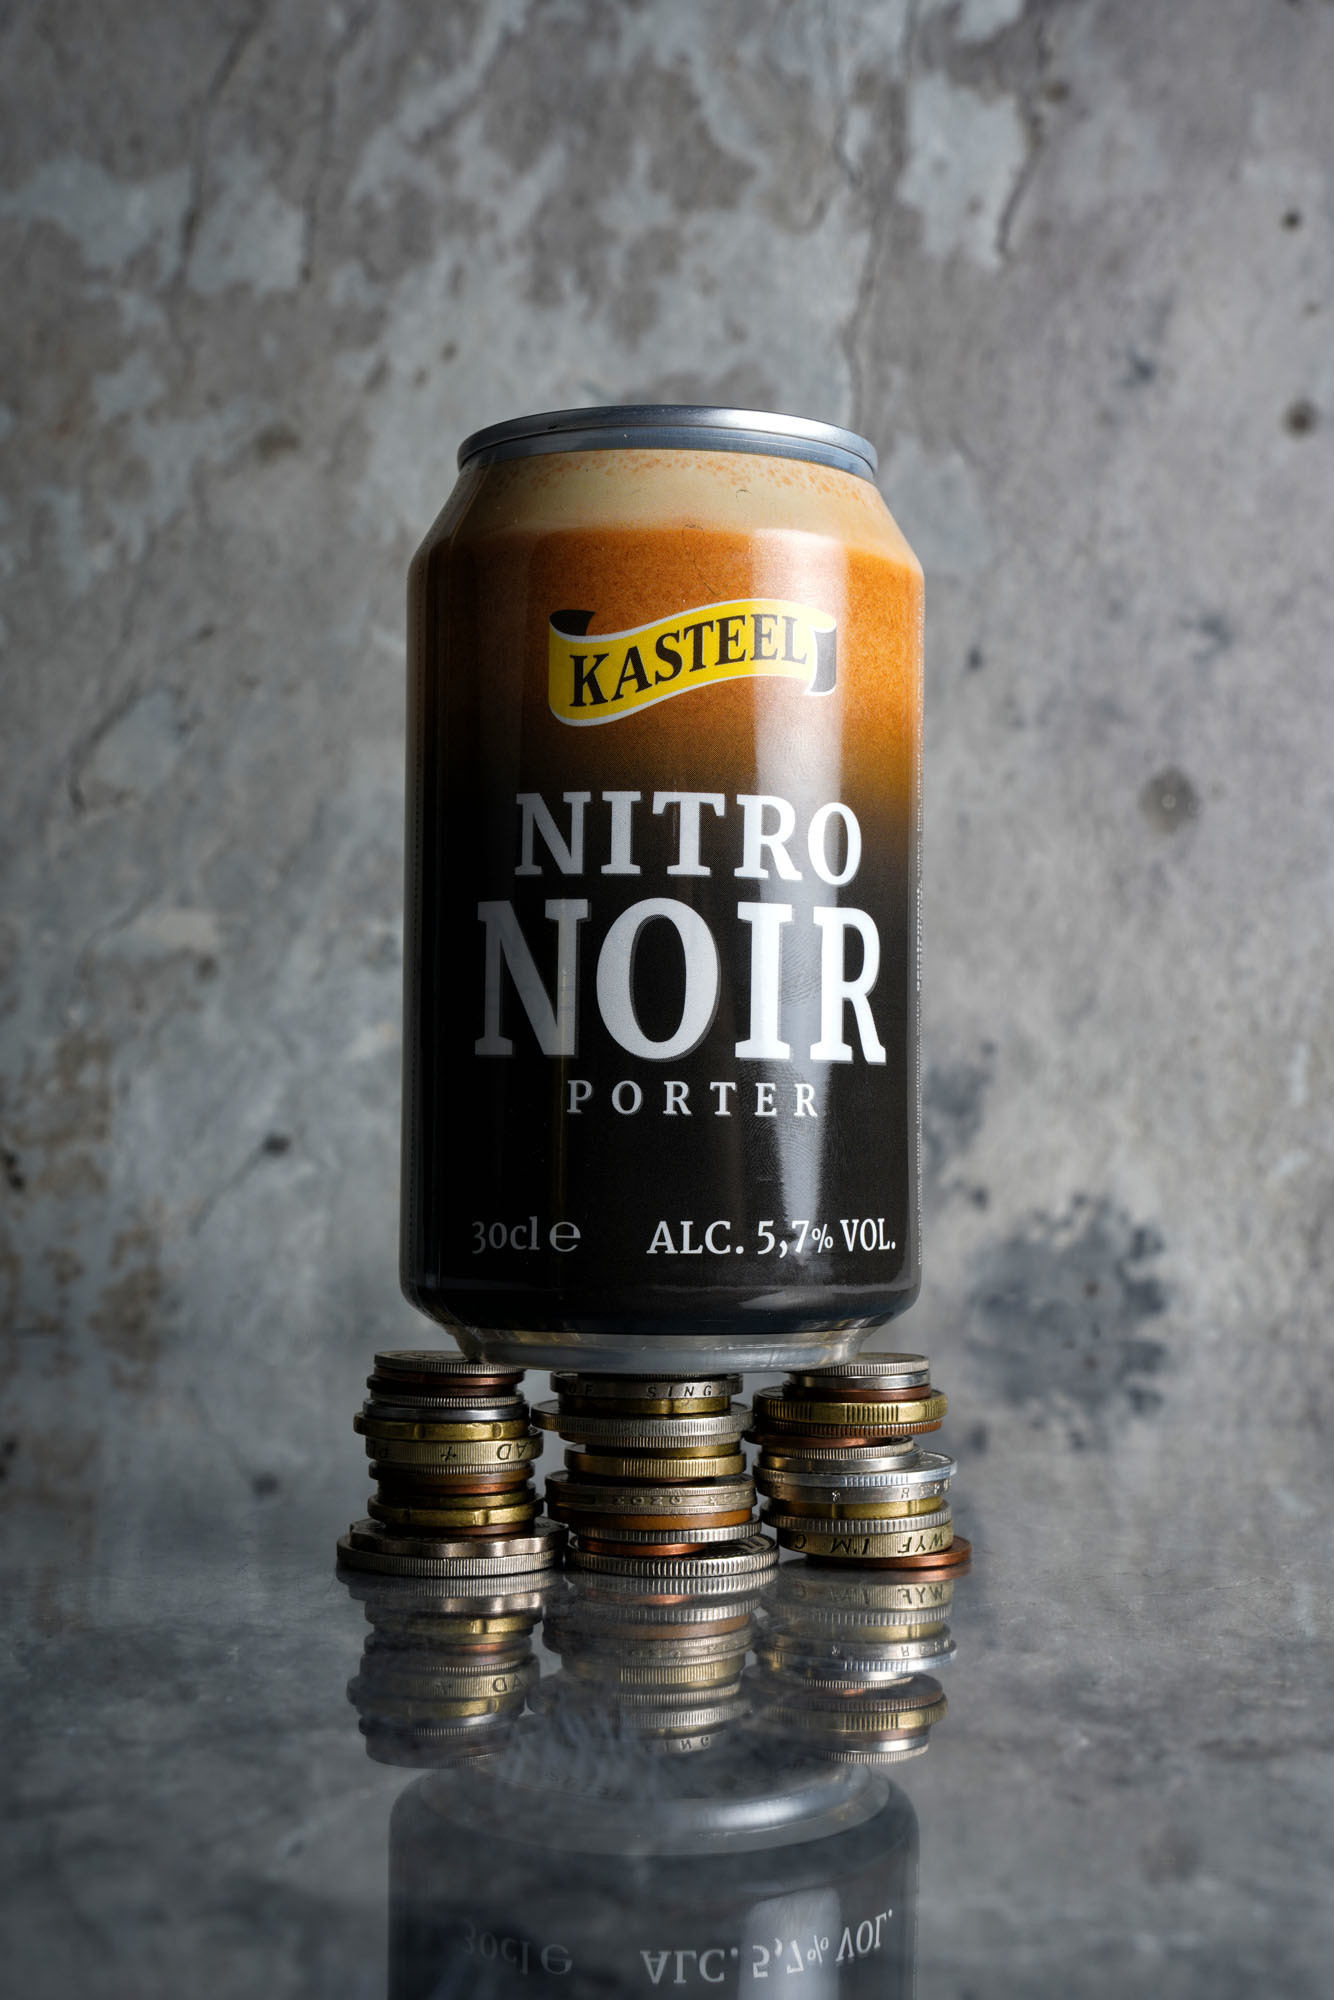 Kasteel Nitro Noir van Brouwerij van Honsebrouck